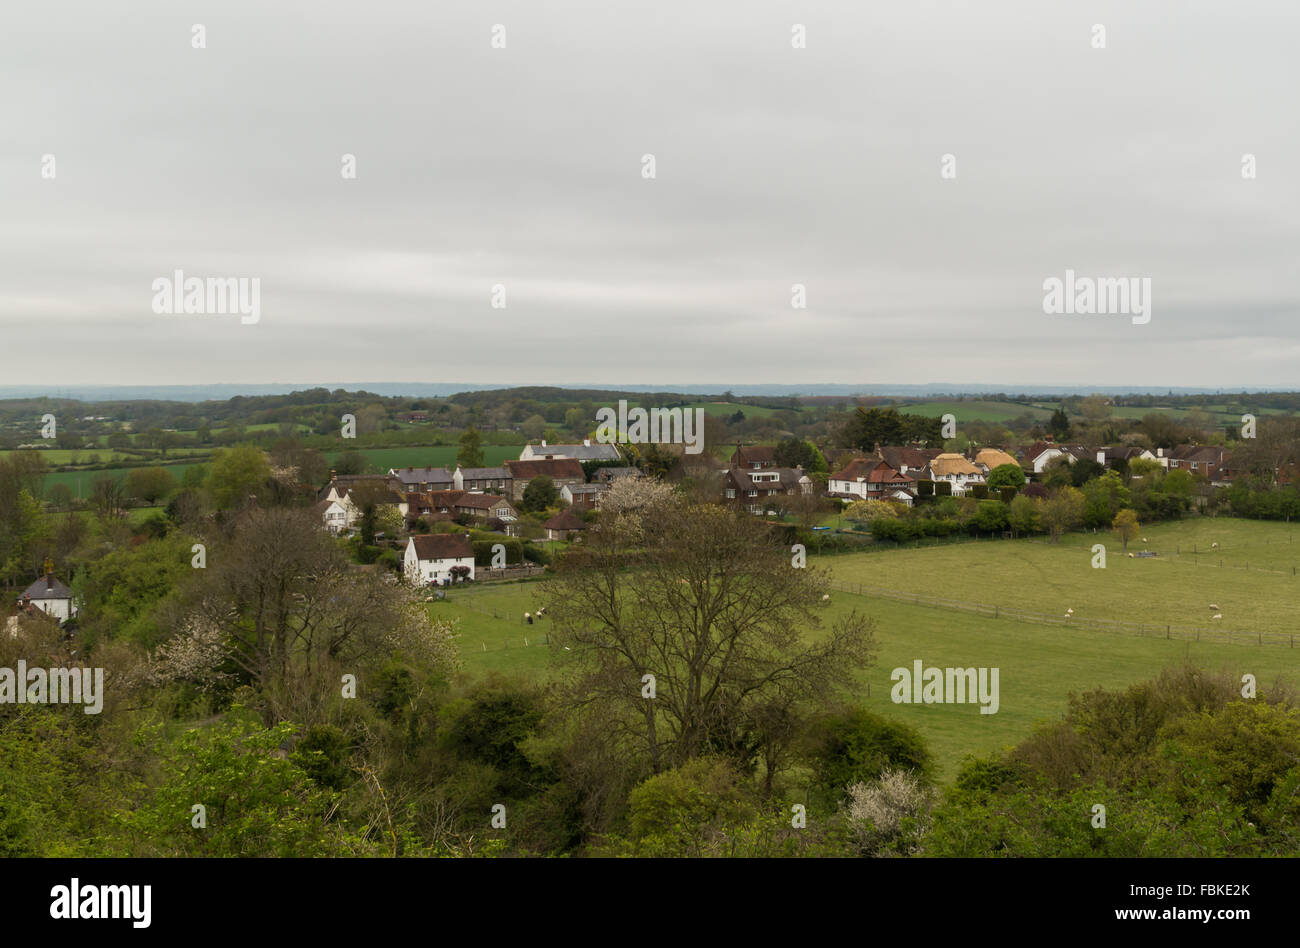 Blick hinunter auf die Landschaft von West Sussex in Richtung Fulking, einem ländlichen Dorf/Weiler eingebettet, am Fuße von Hügeln und Böschungen Stockfoto